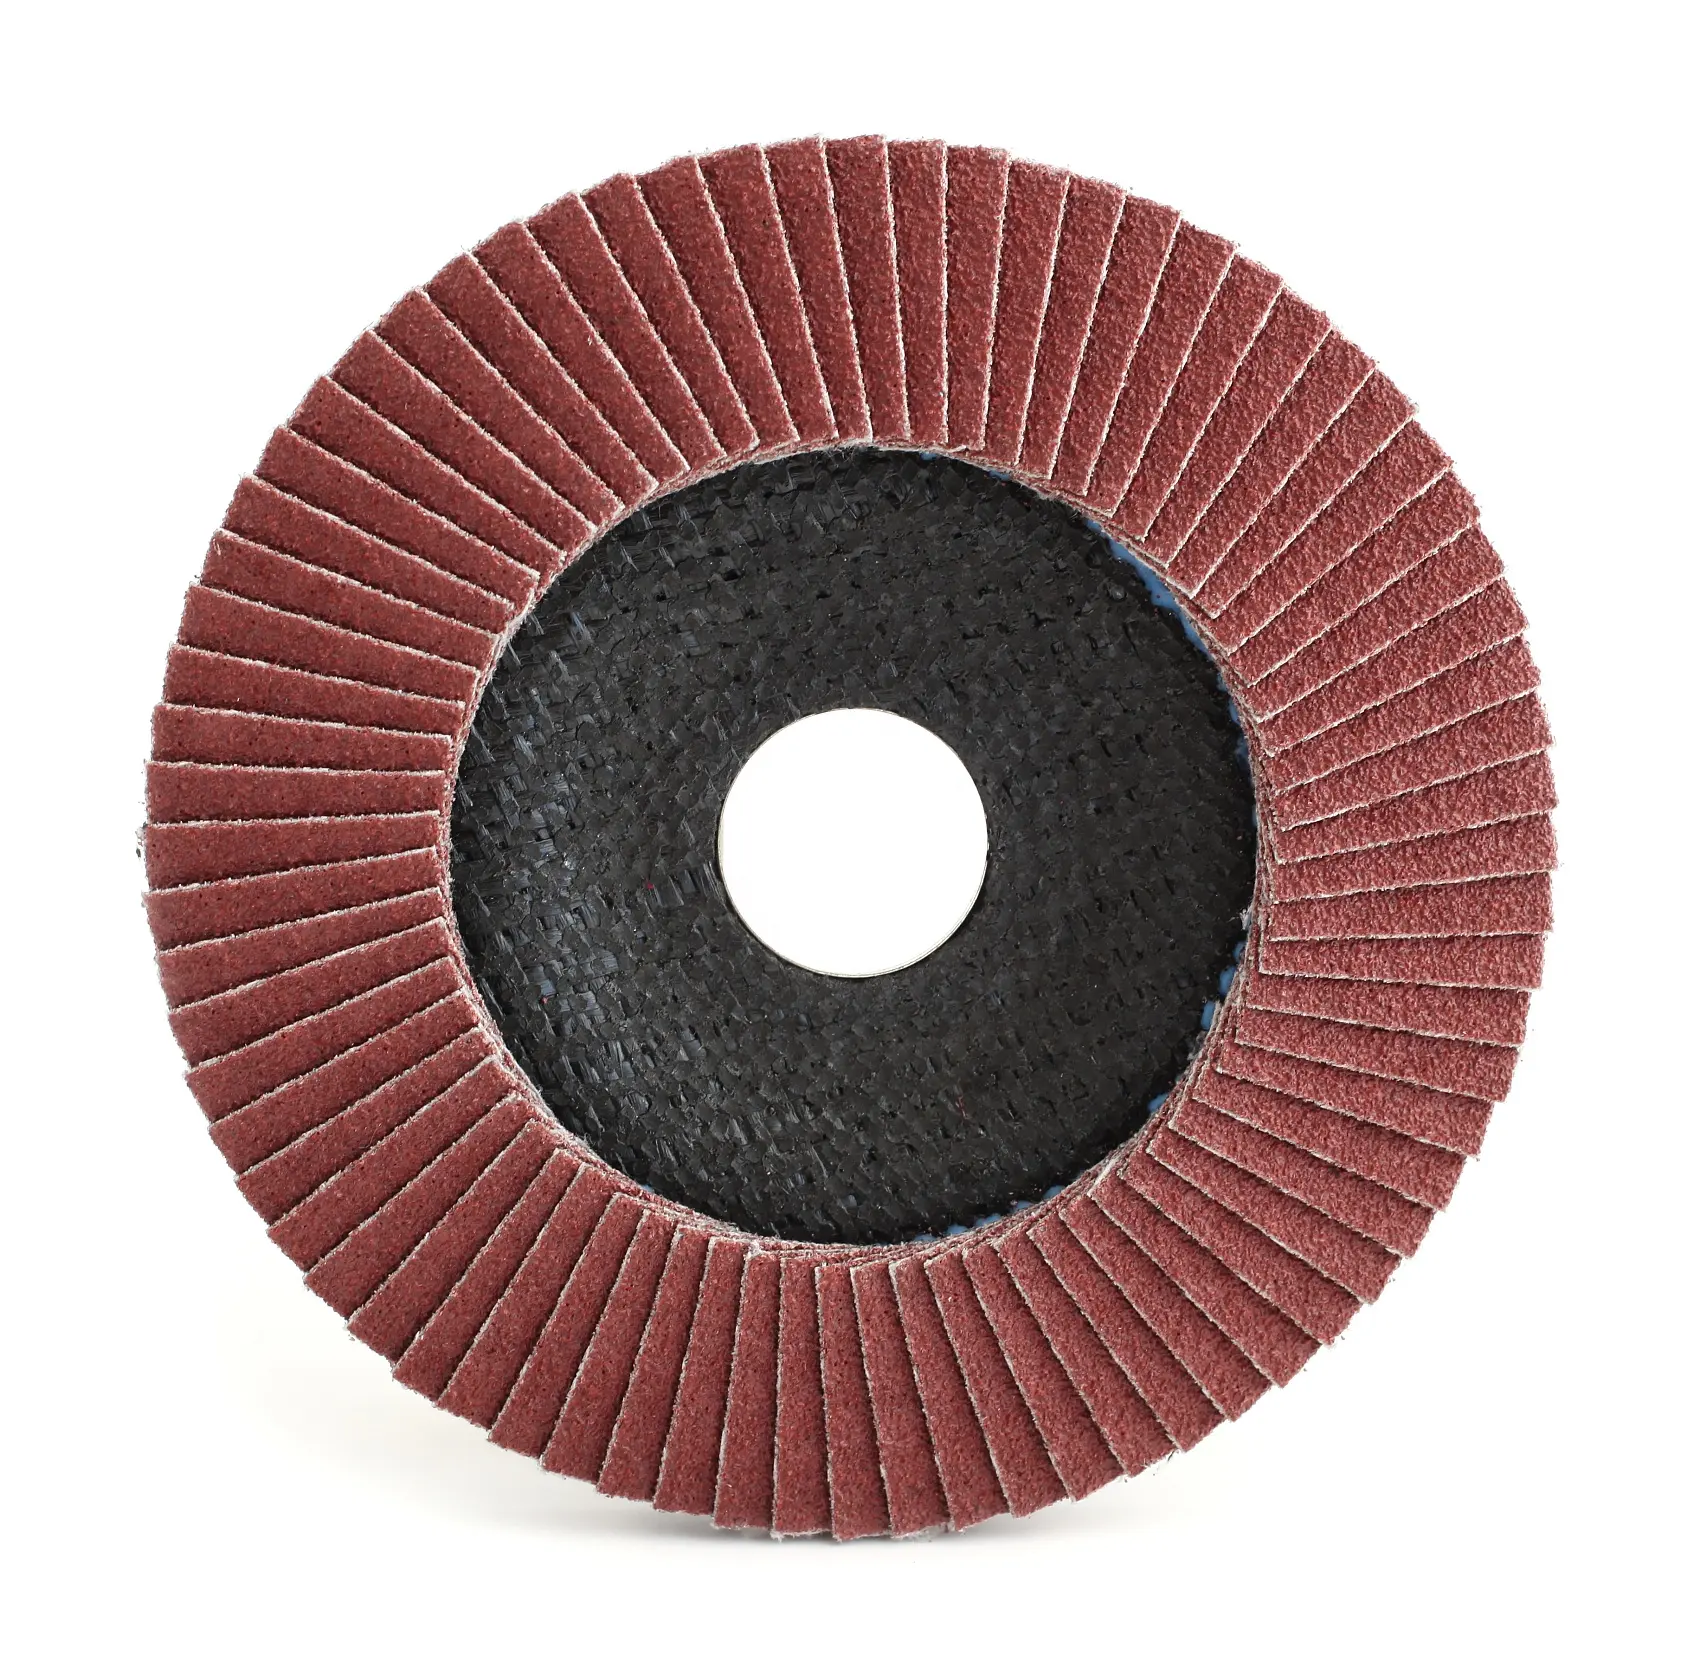 Metal ve ahşap için 40,60,80,100,120 Grit Flap diskler alüminyum oksit taşlama tekerleği Flap disk